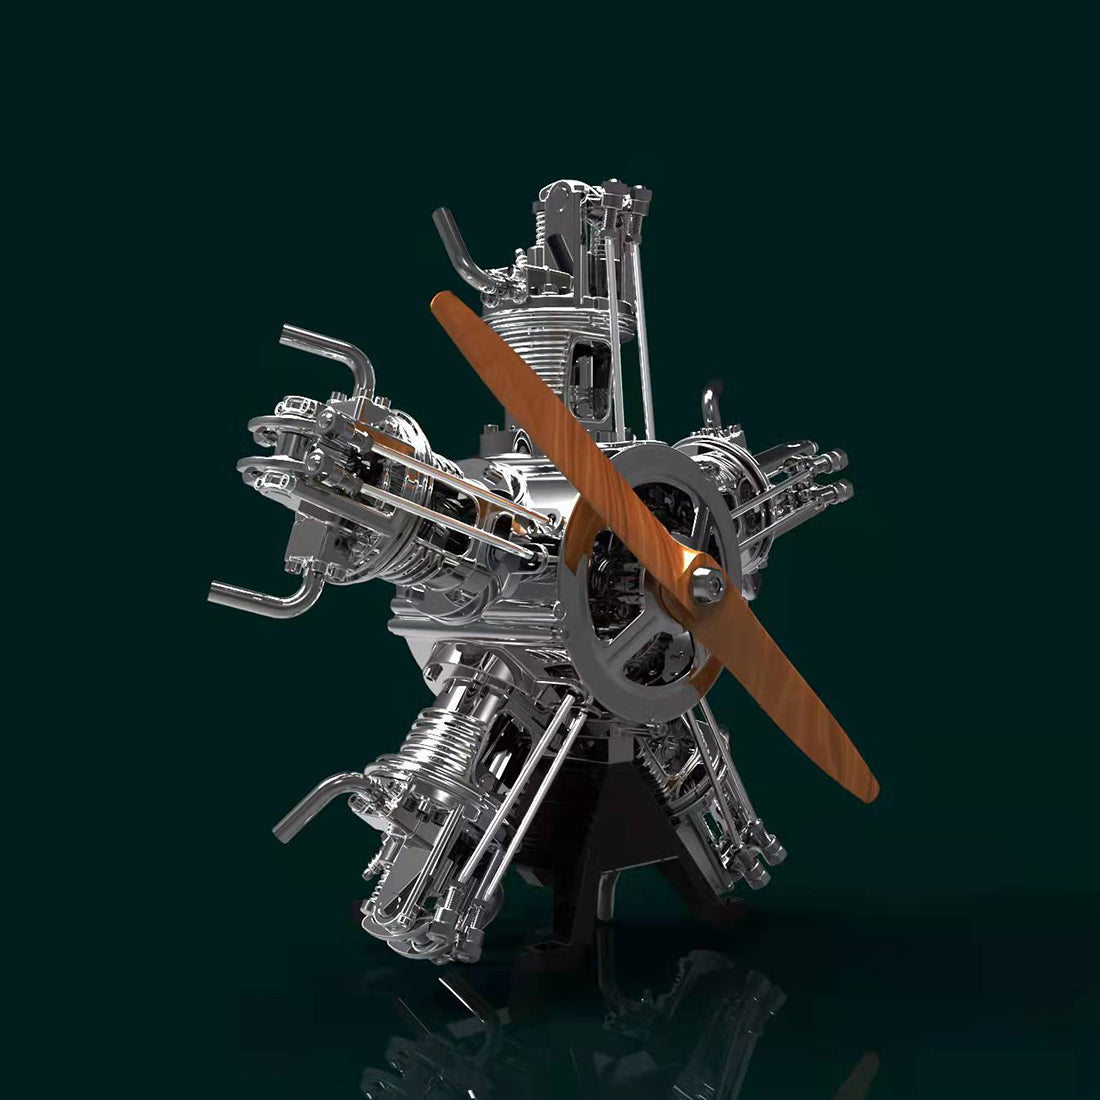 teching radial engine model kit